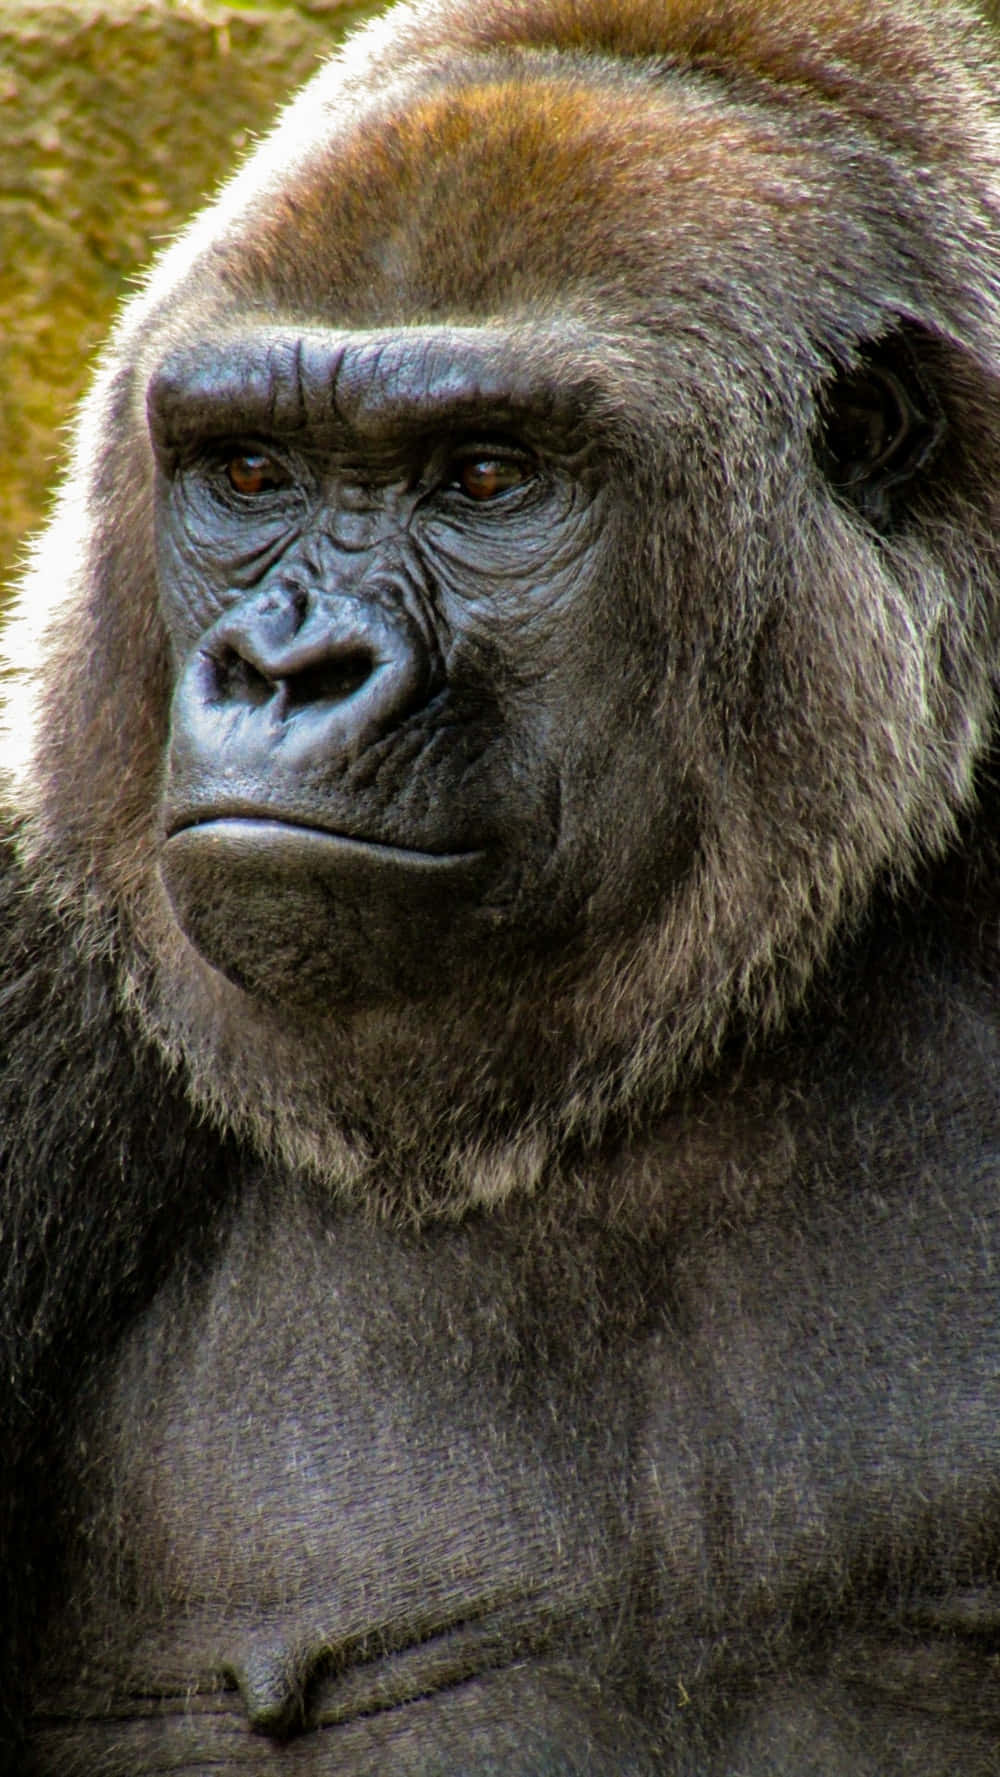 Pixel3 Dunkelbrauner Gorilla-hintergrund